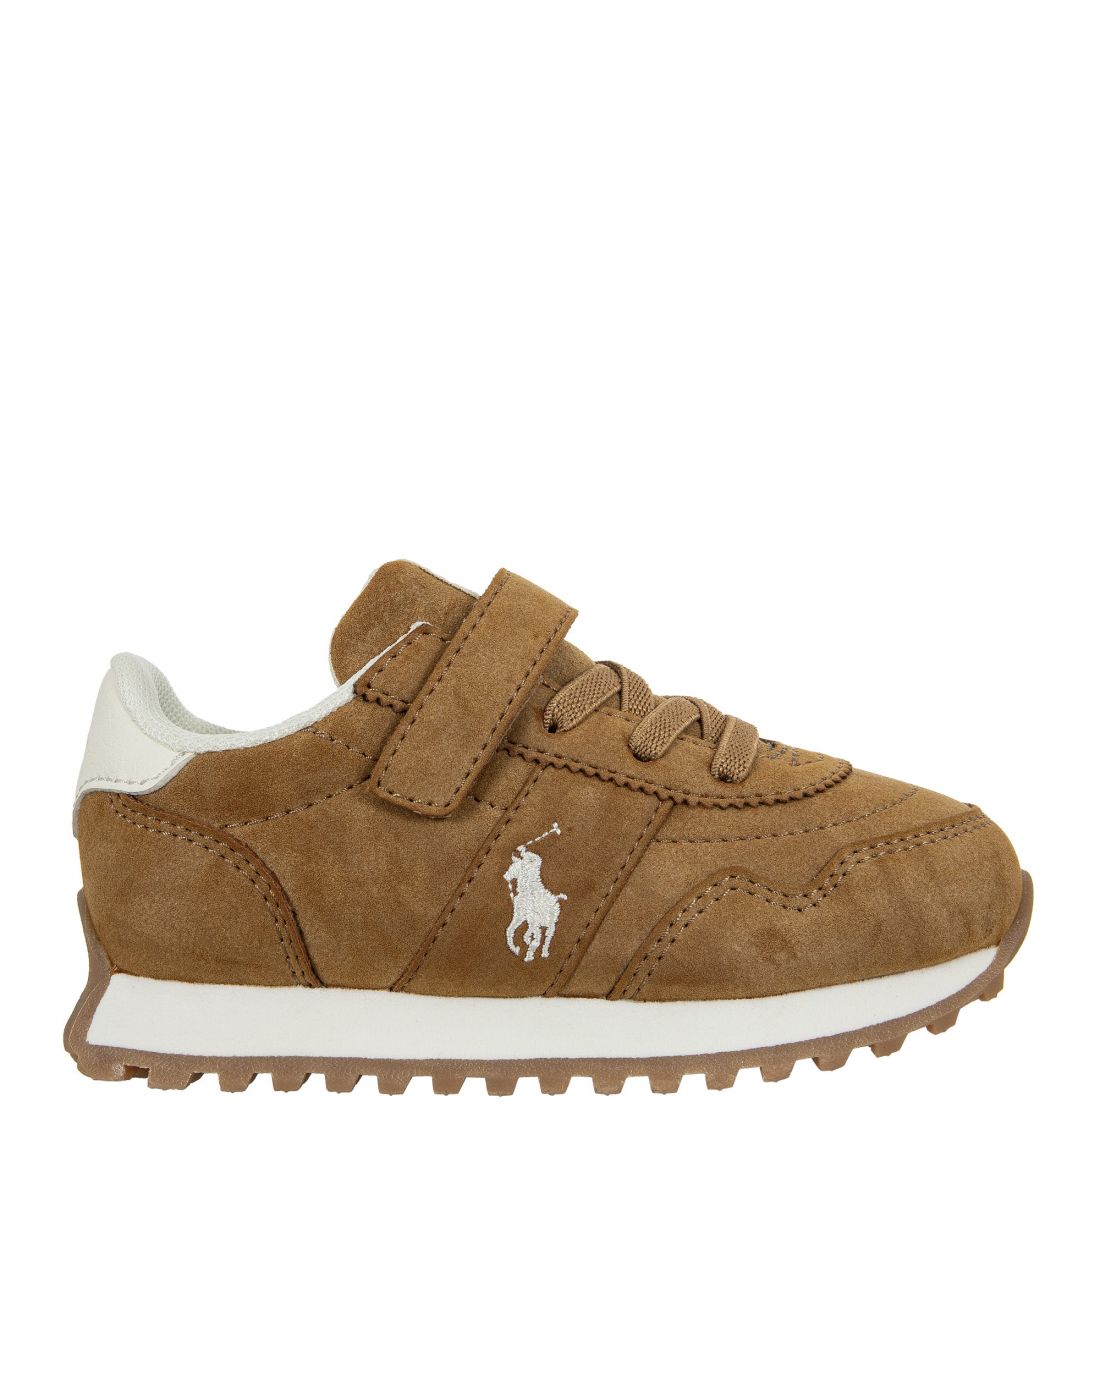 Παιδικά Παπούτσια Sneakers Polo Ralph Lauren, Polo Ralph Lauren, 23265393 |  LapinKids.com | LAPIN KIDS